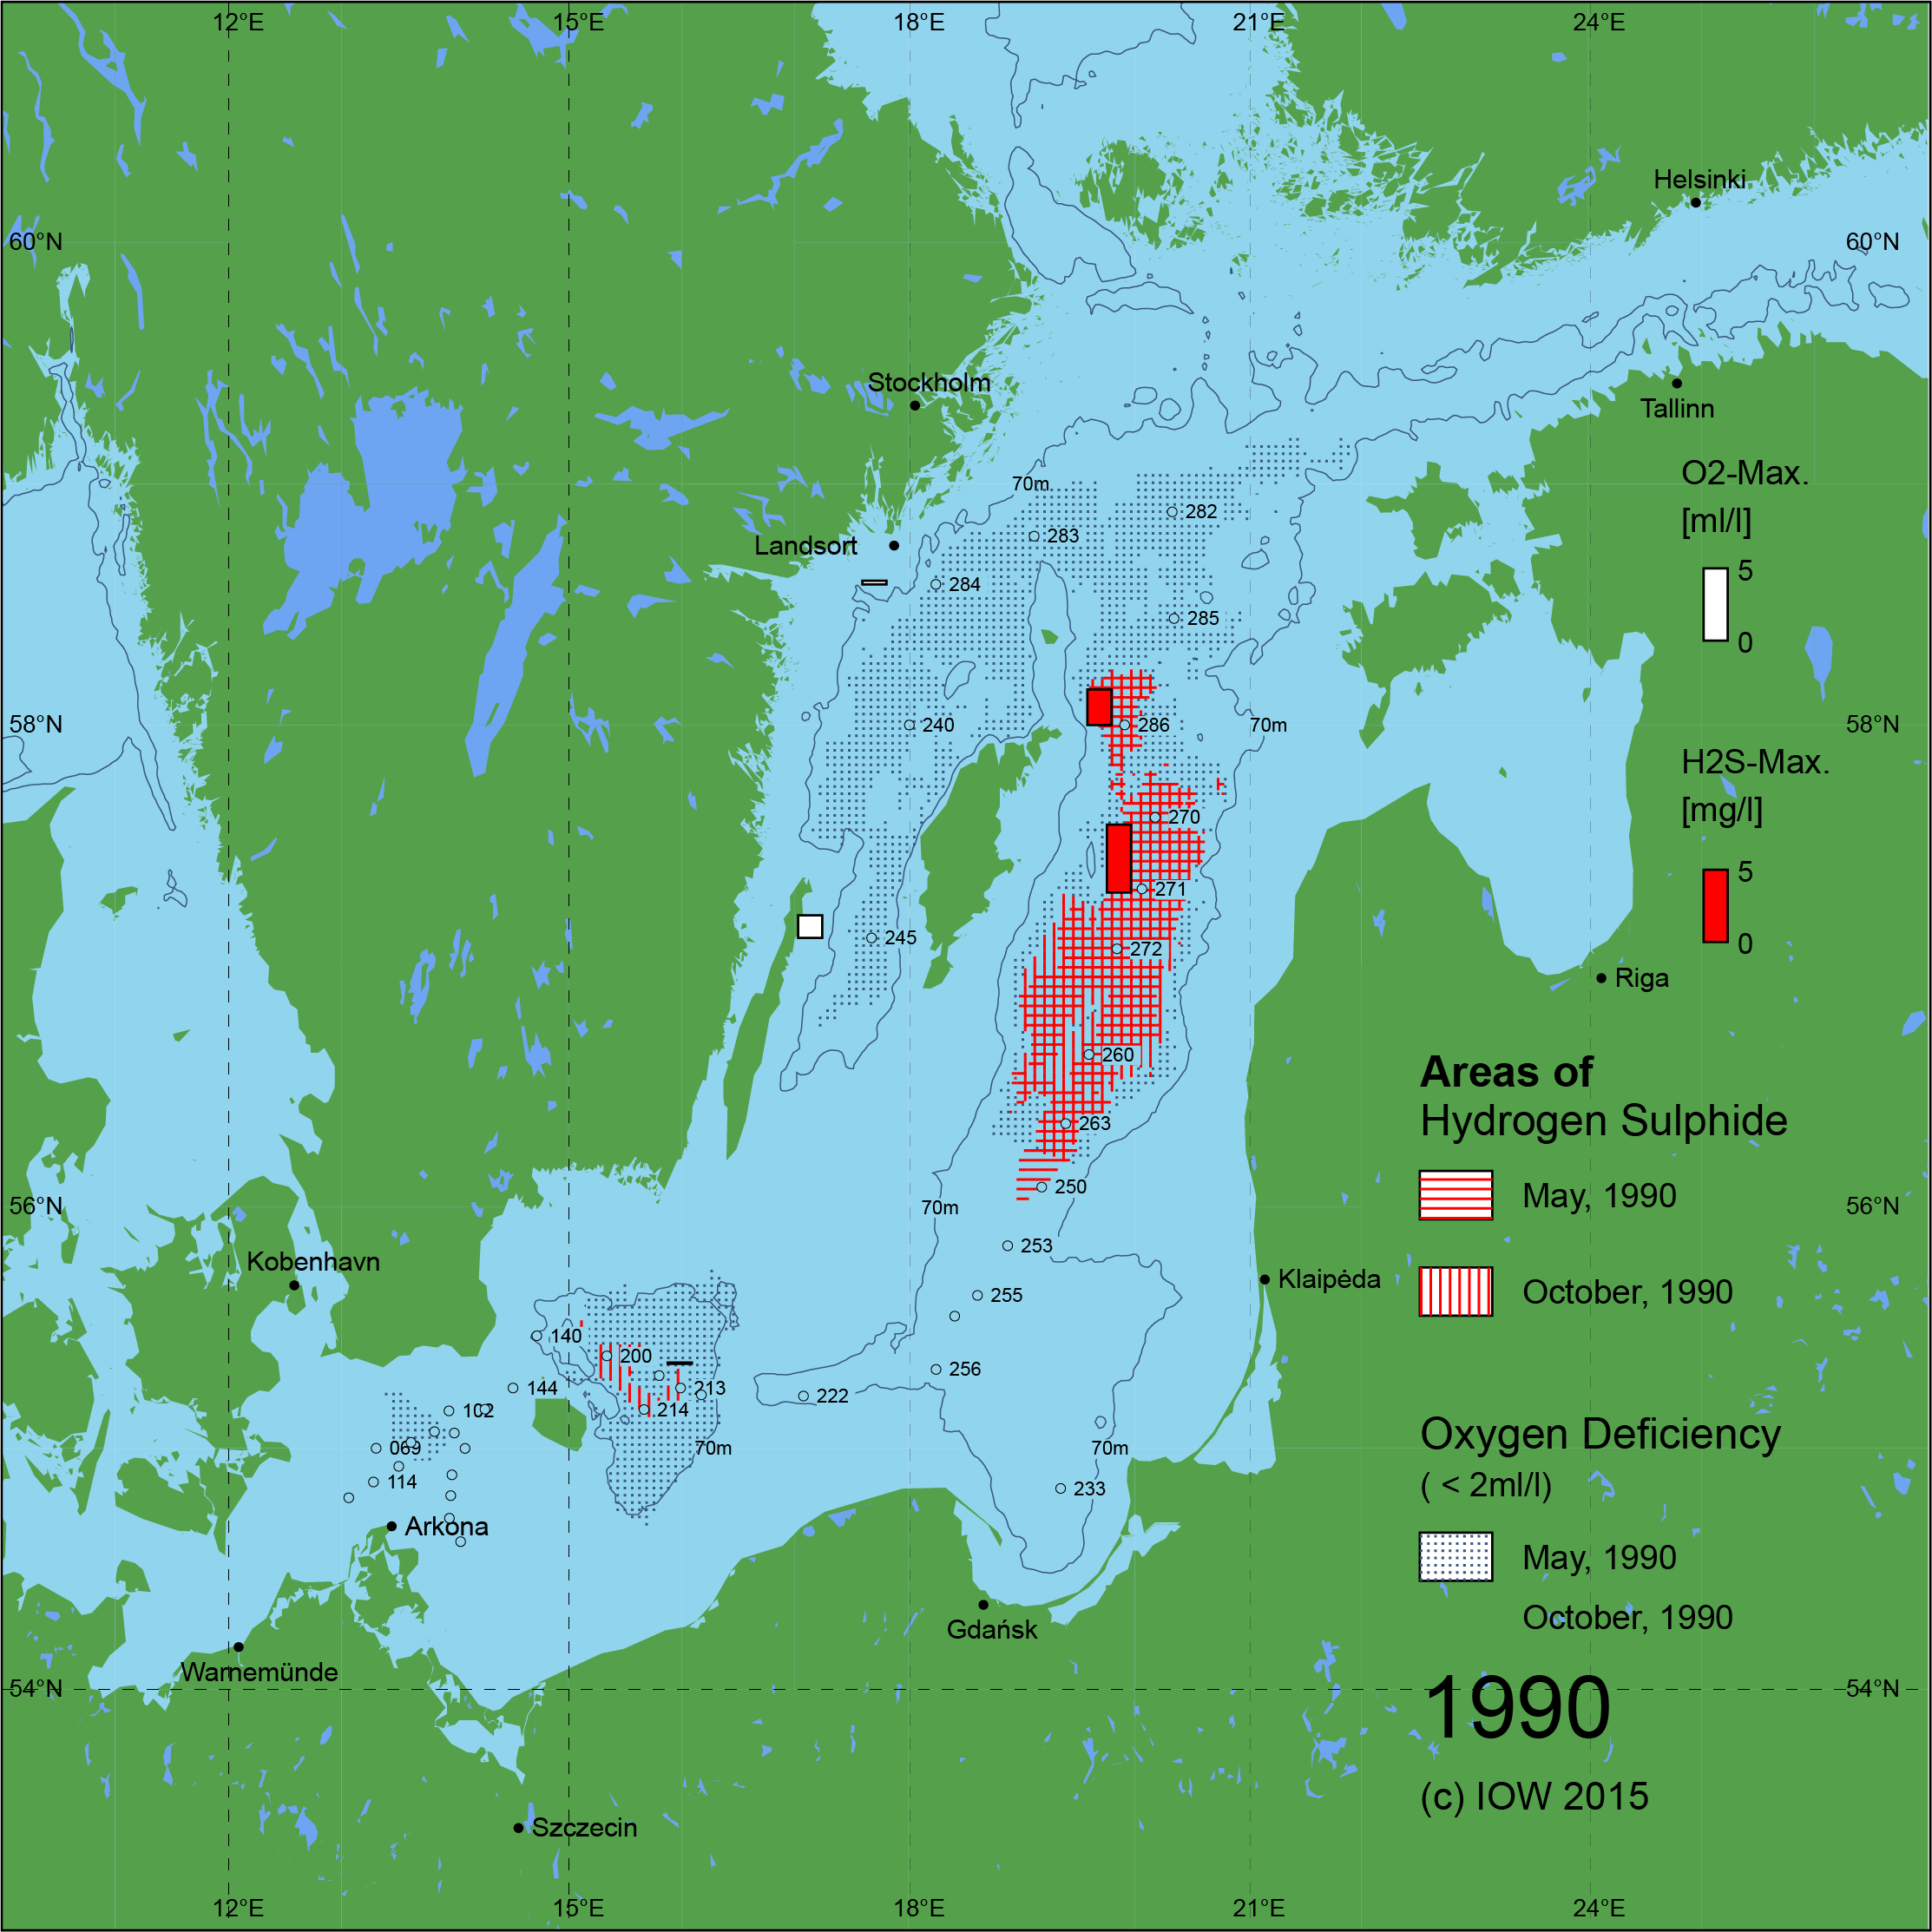 Sauerstoffarme und sauerstofffreie Gebiete in der Ostsee - 1990